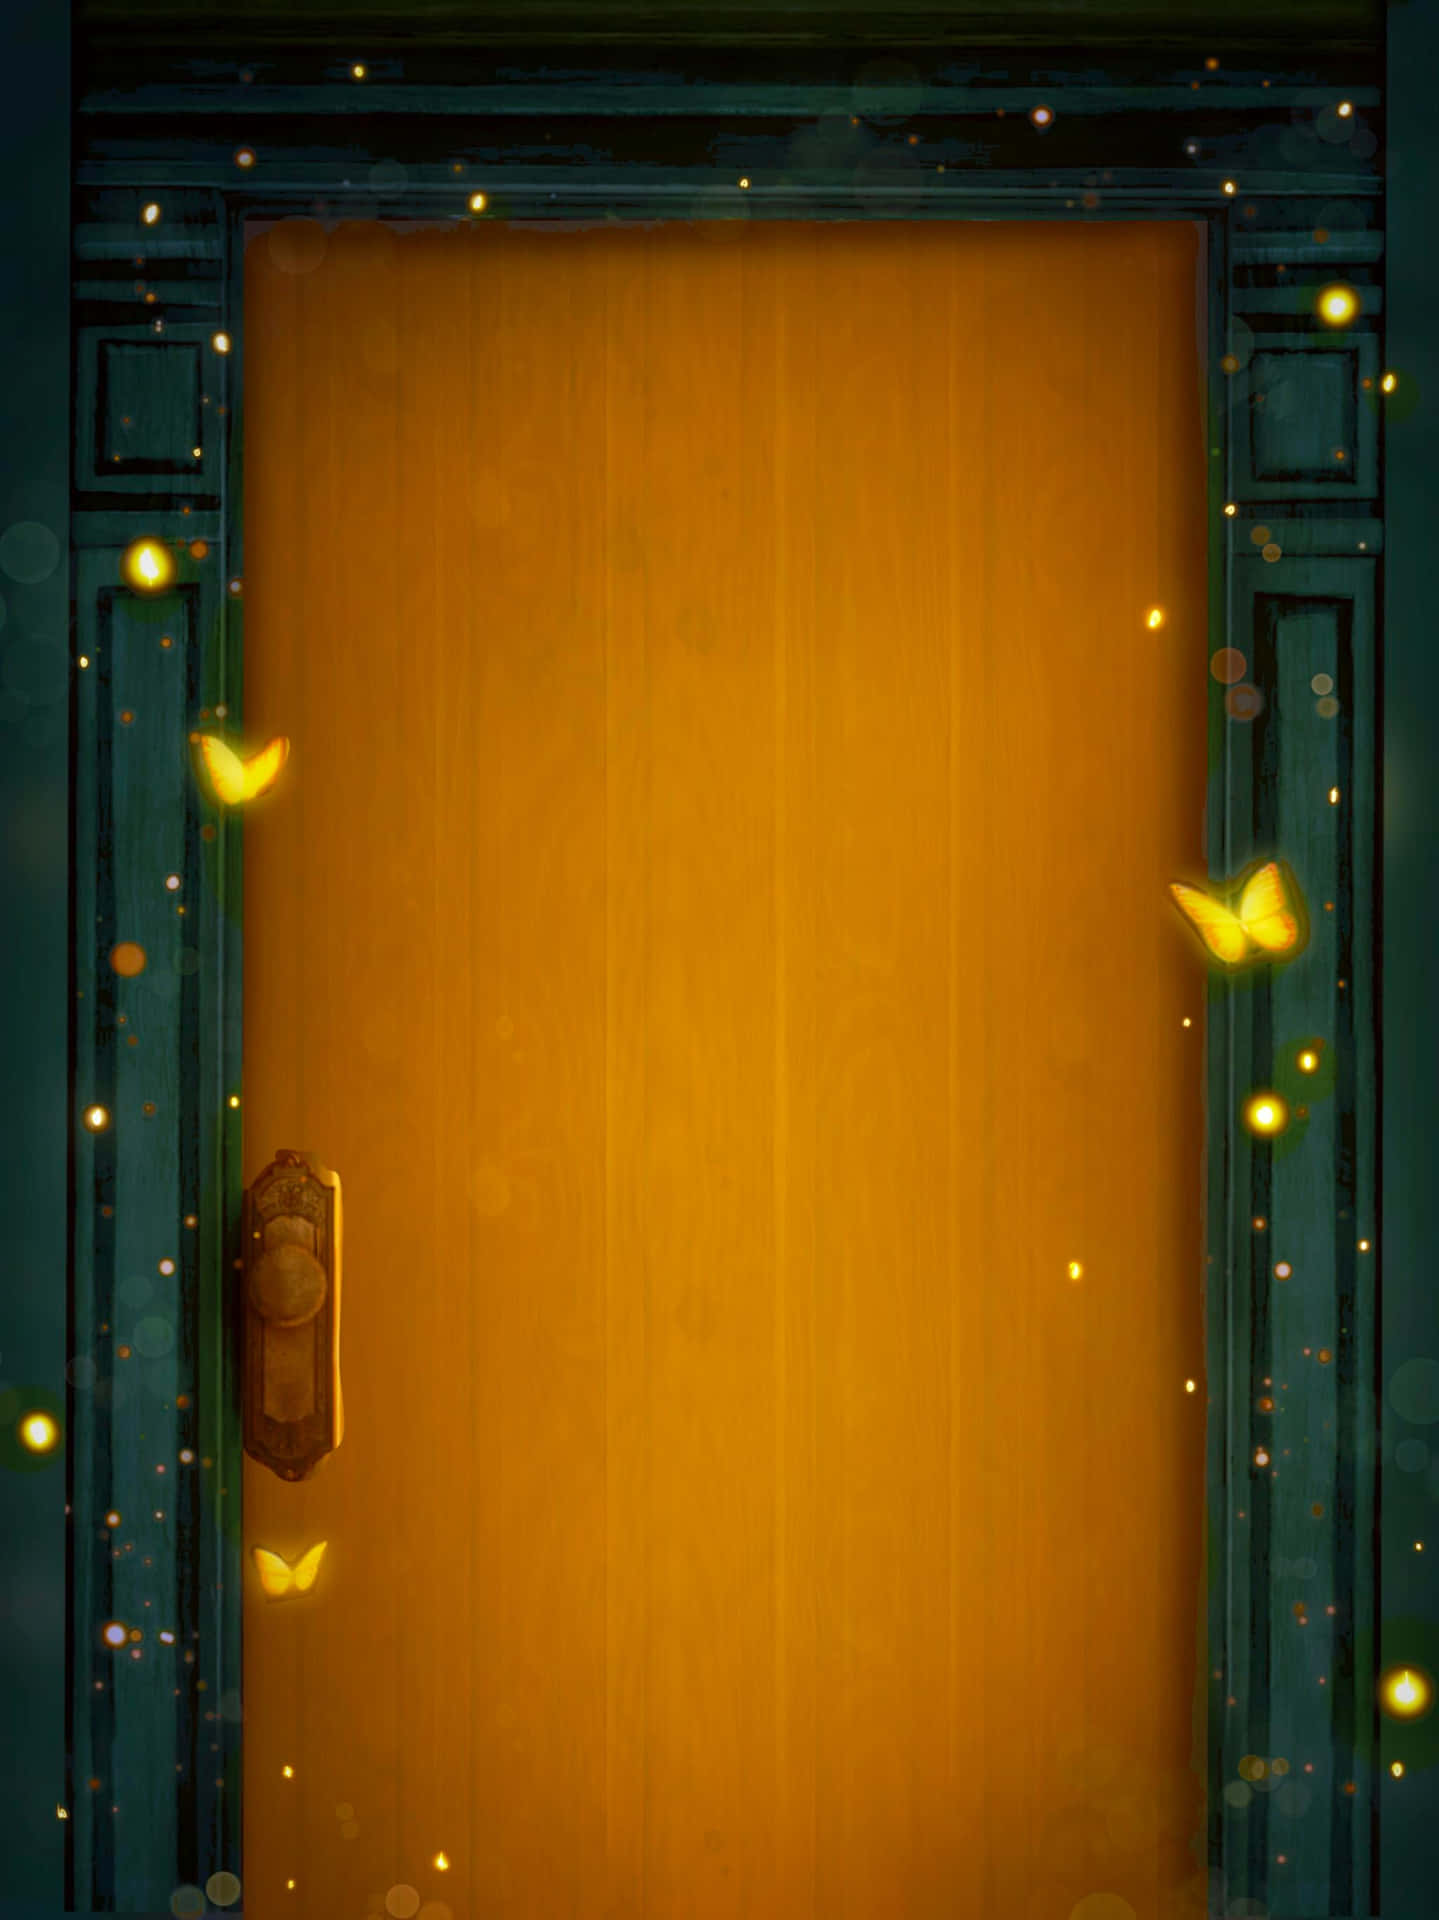 A Door With Butterflies Flying Around It